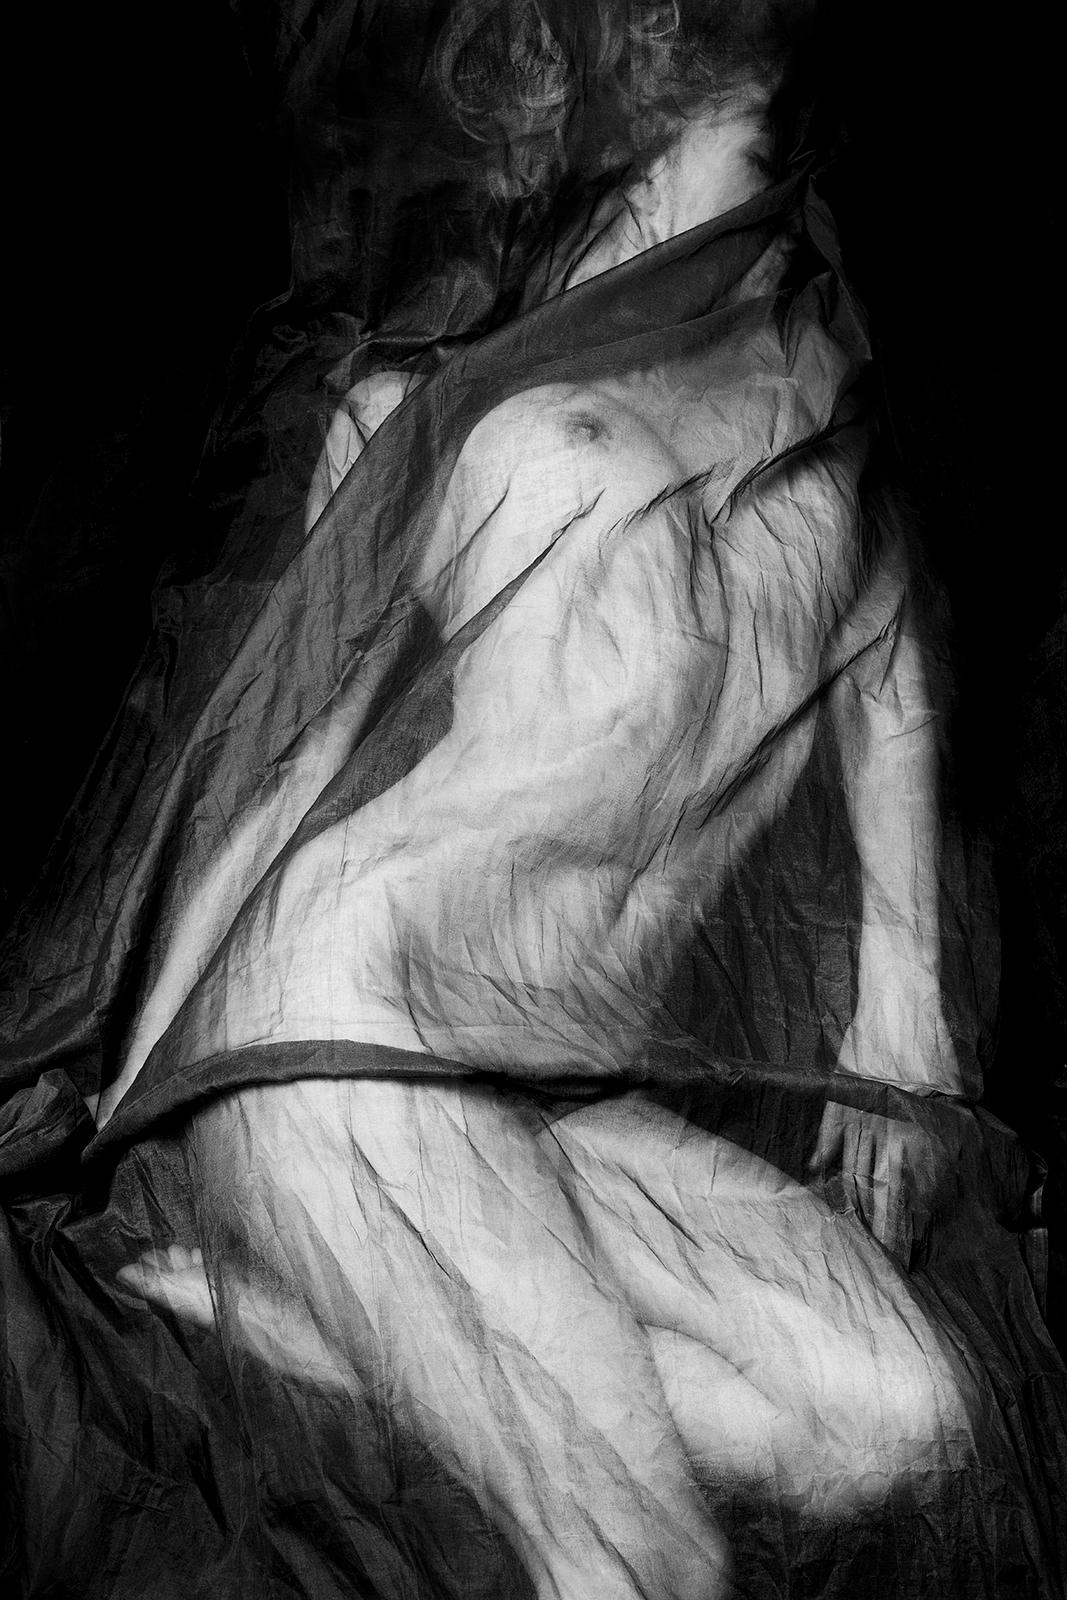 Ian Sanderson Black and White Photograph – Charlotte-Signierter Aktdruck in limitierter Auflage, Schwarz-Weiß-Foto, Modell, zeitgenössisch